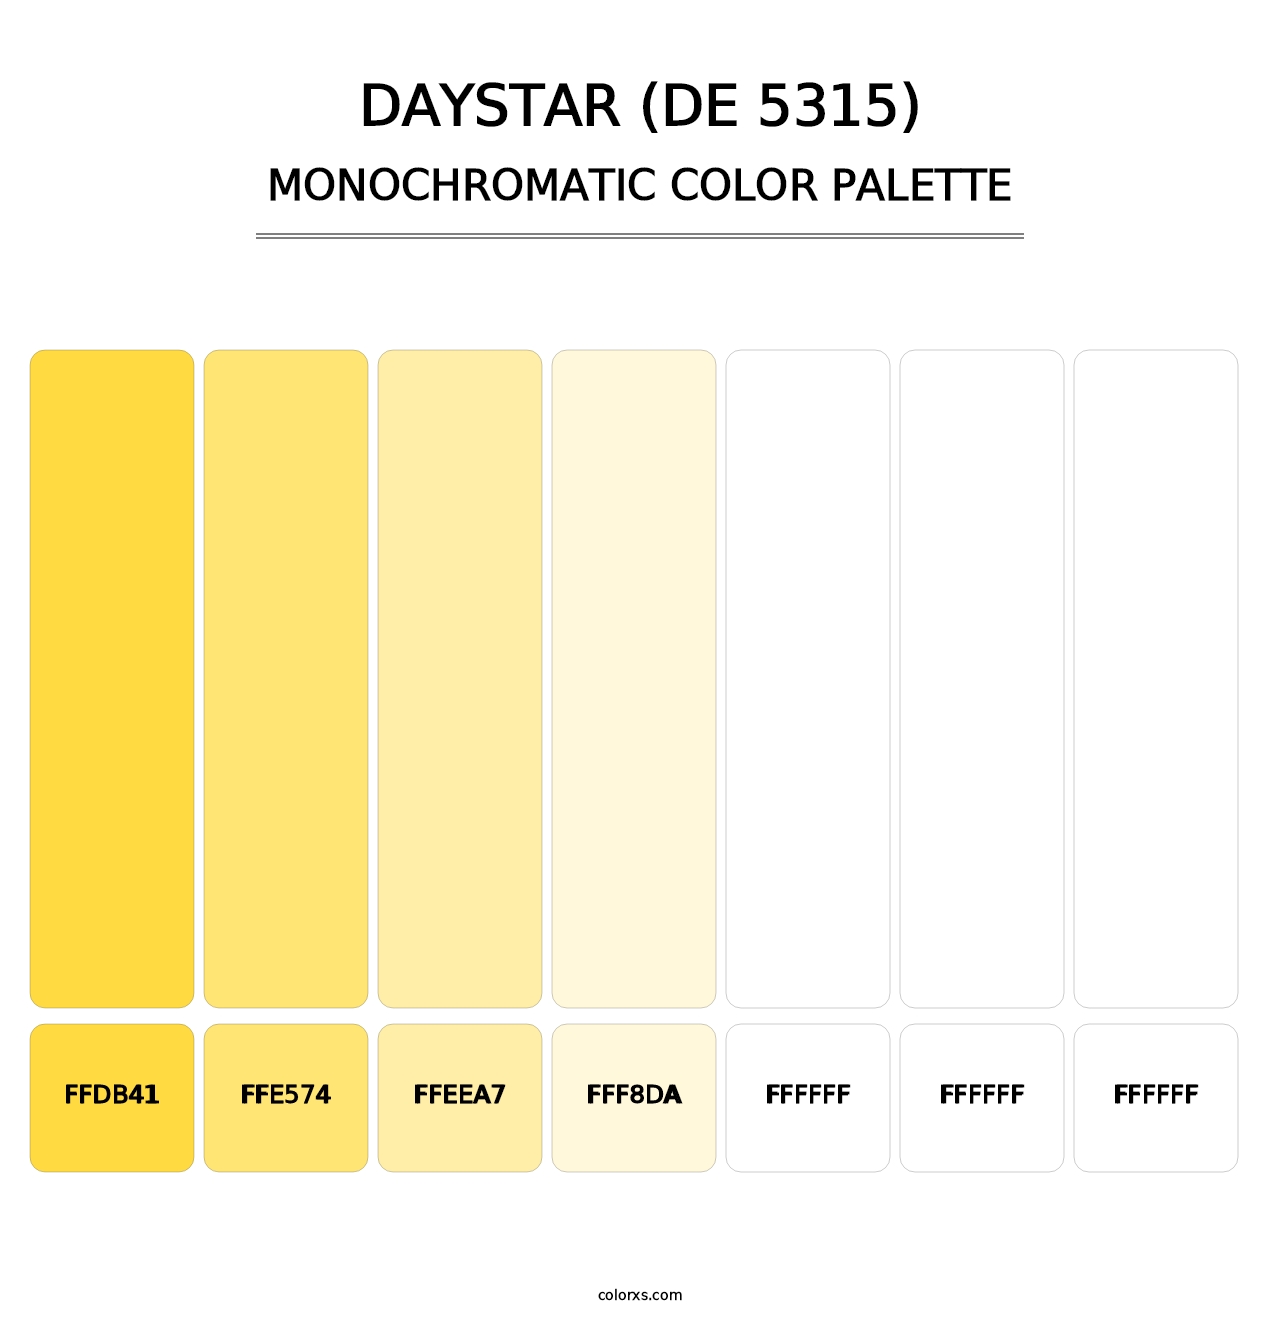 Daystar (DE 5315) - Monochromatic Color Palette